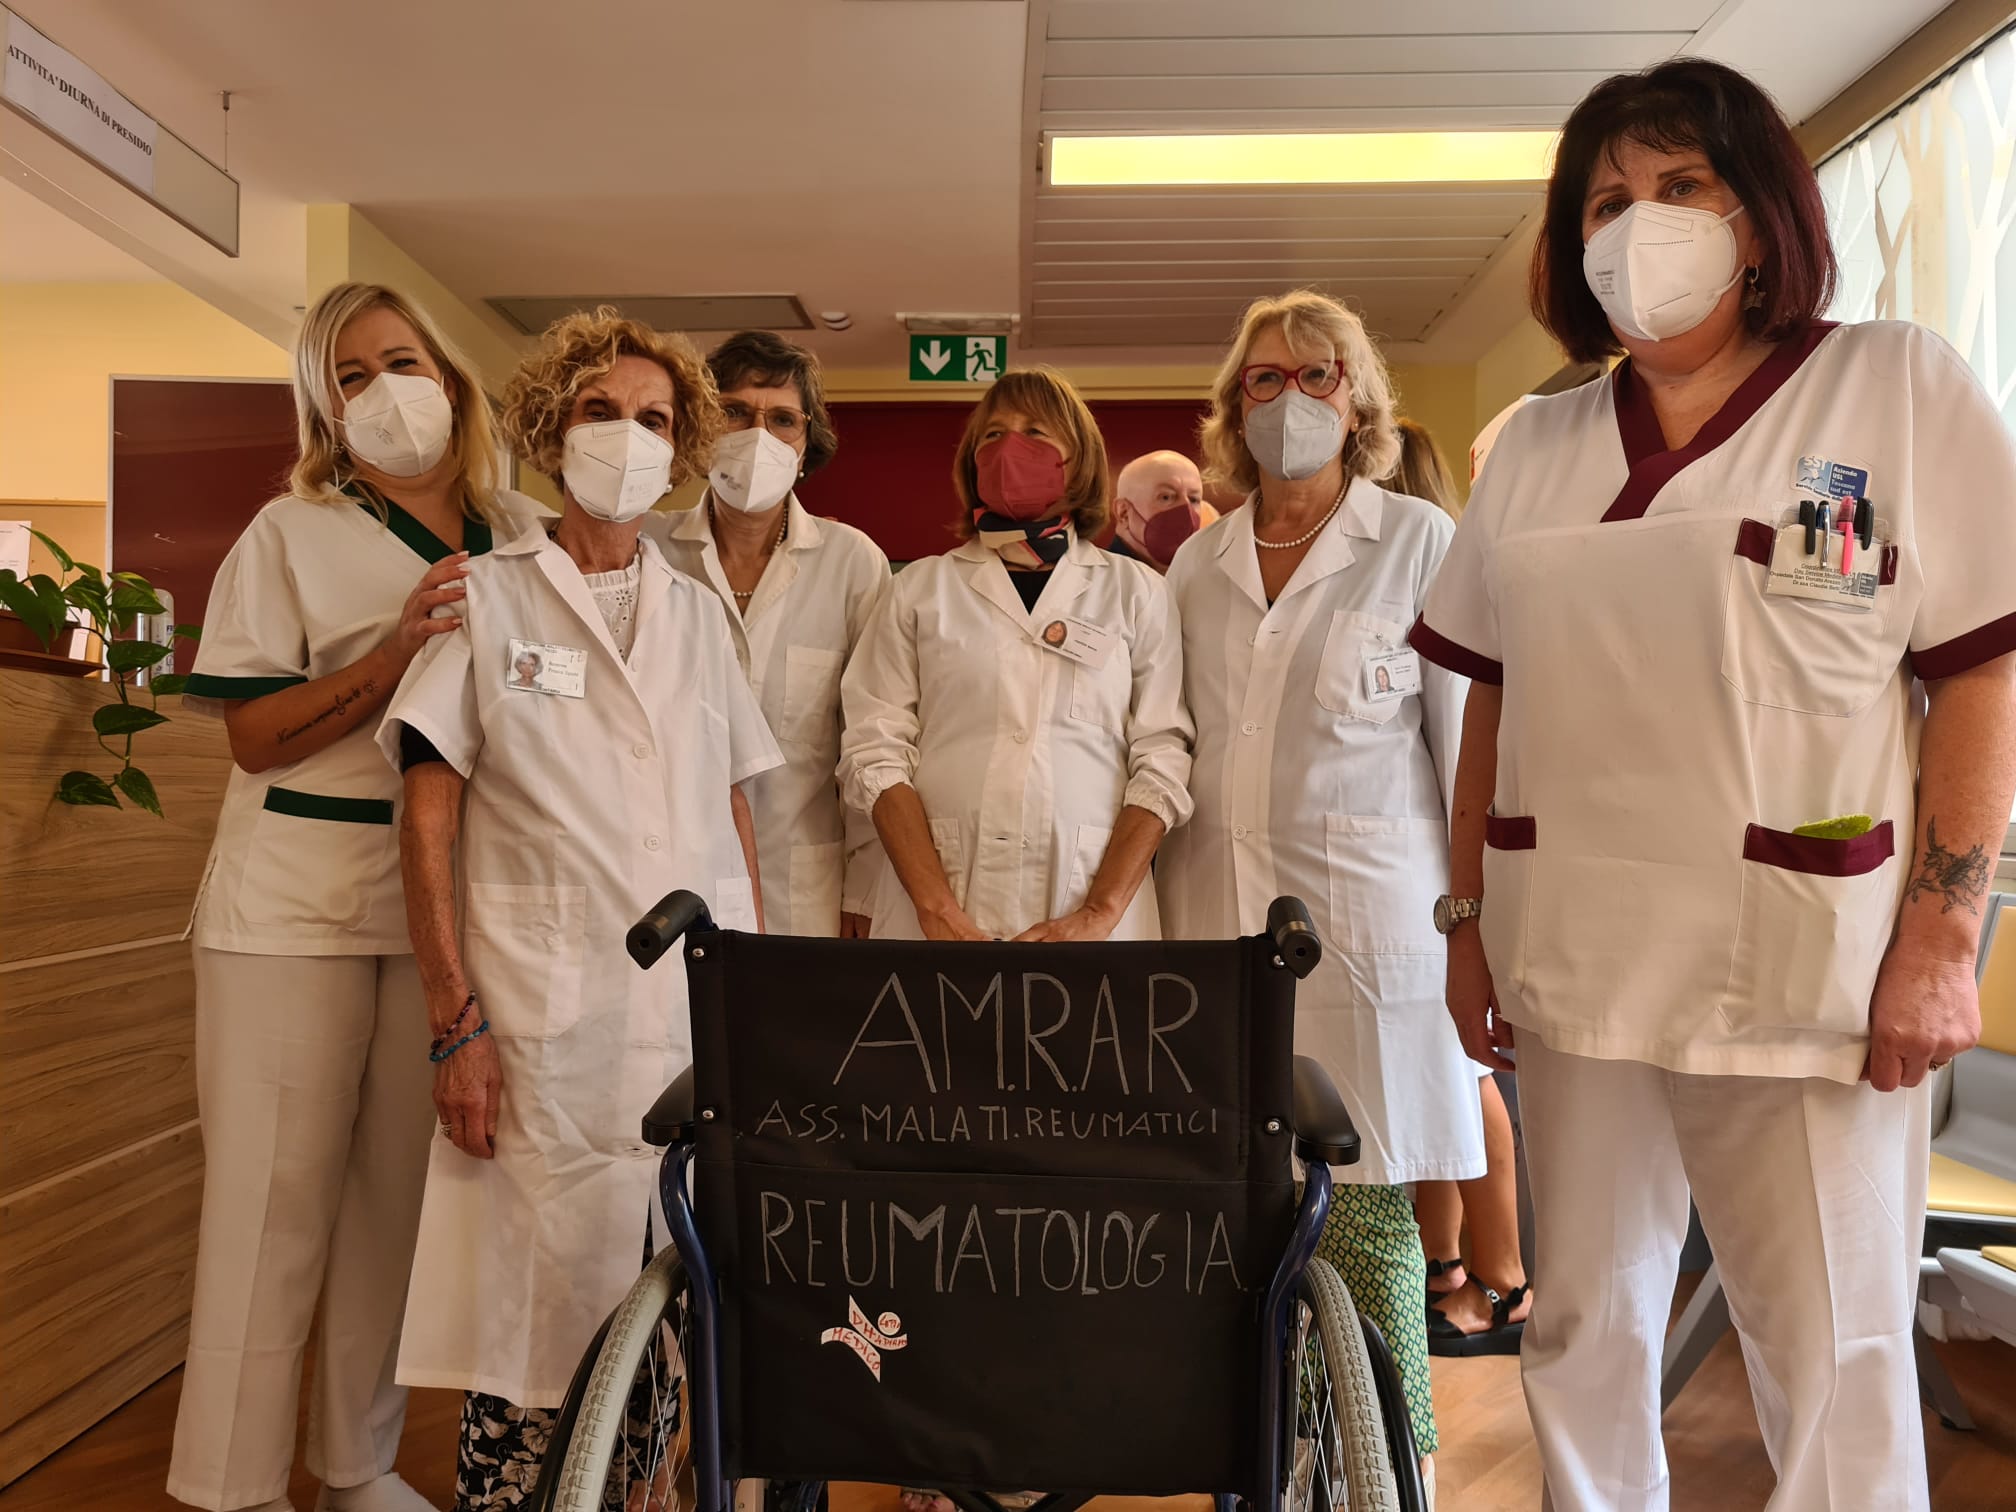 Collaborazione  tra Associazione Malati Reumatici di Arezzo (AMRAR) e ospedale San Donato